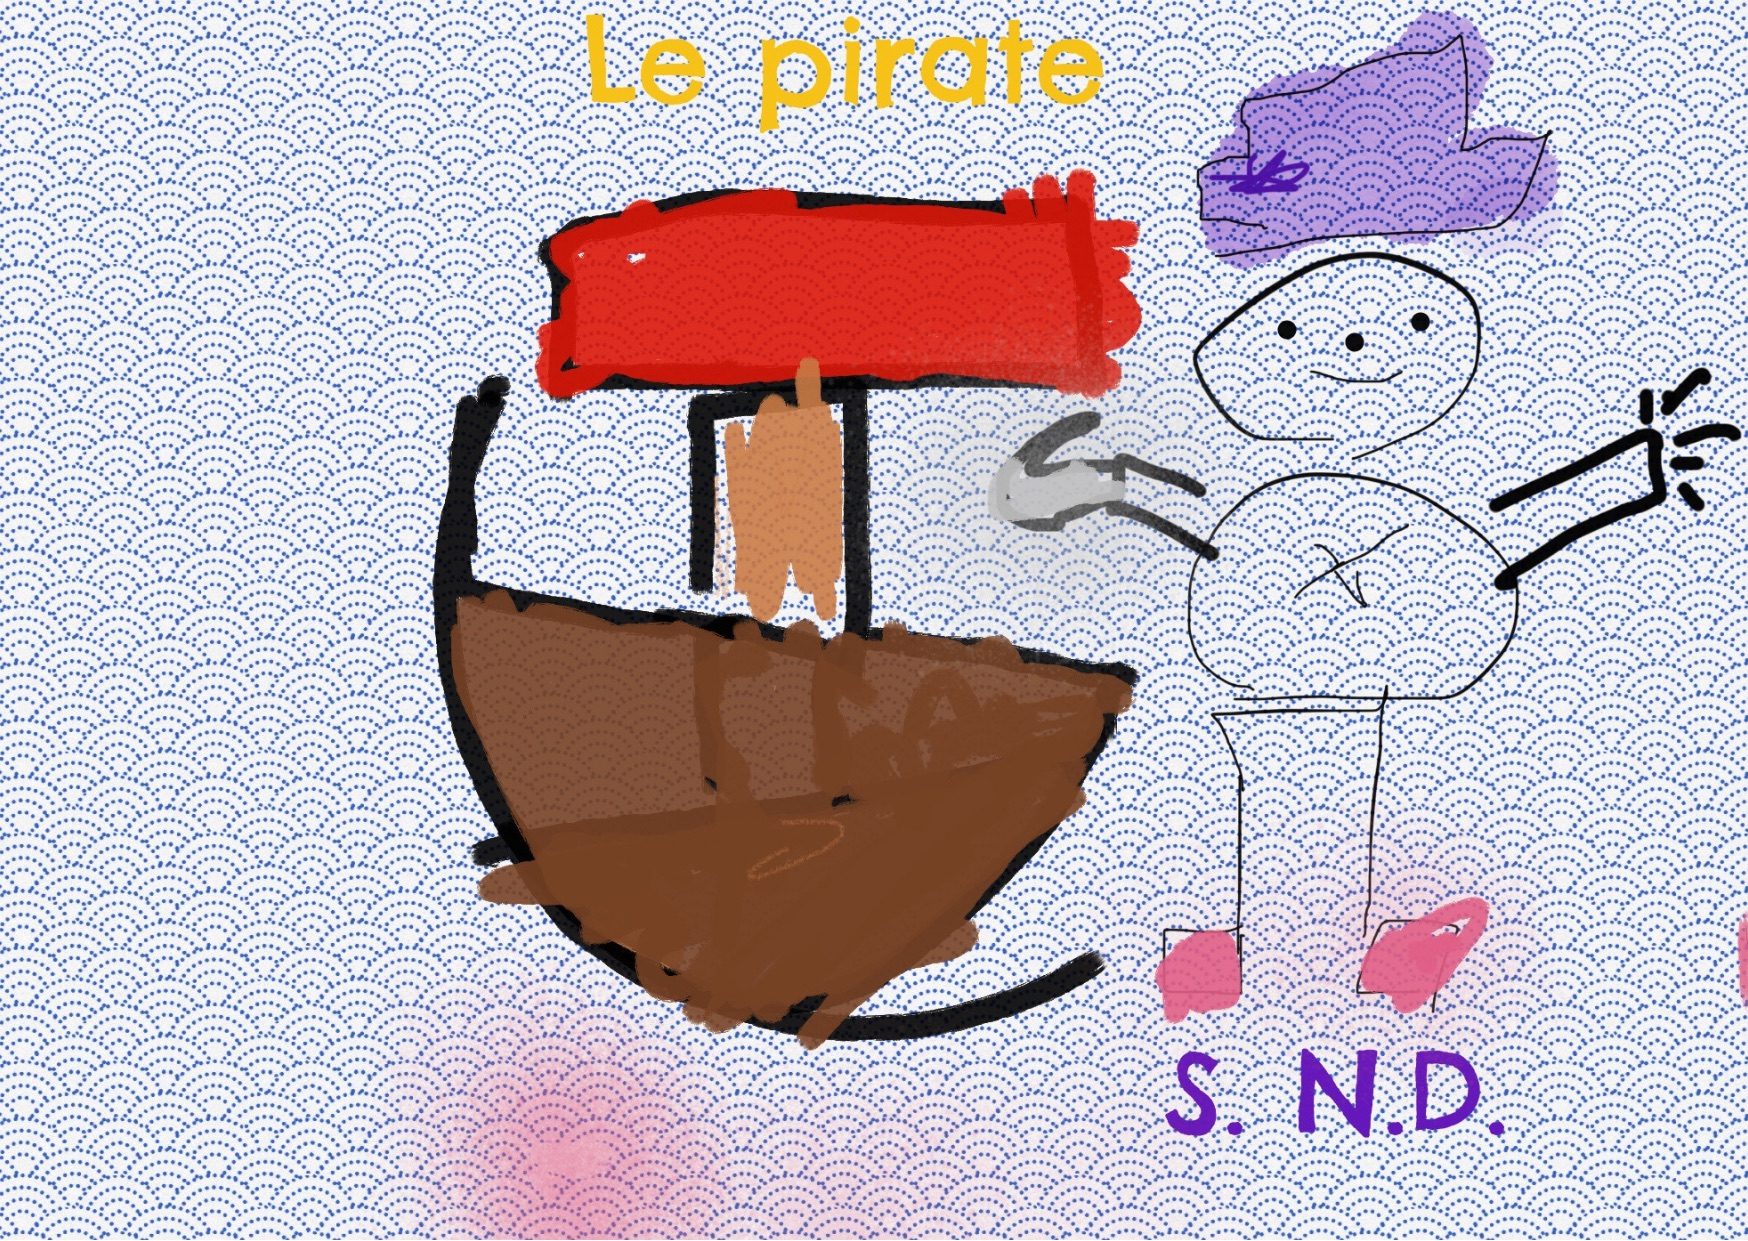 Le pirate